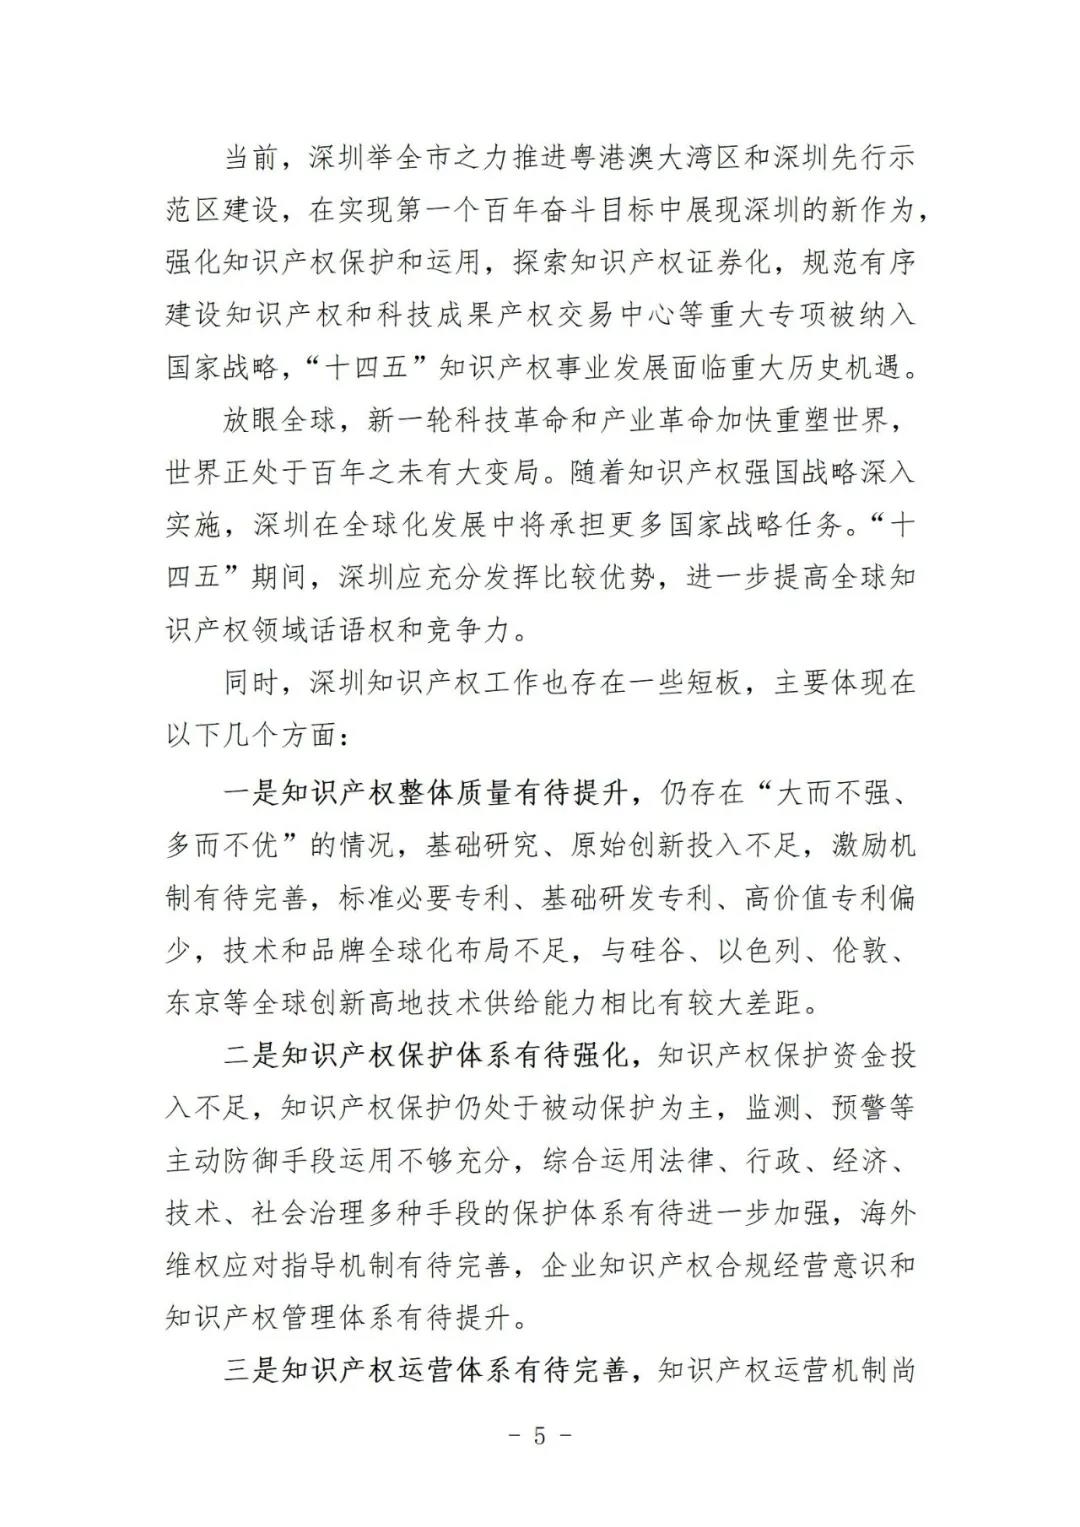 《深圳市知识产权保护和运用“十四五”规划》全文发布！